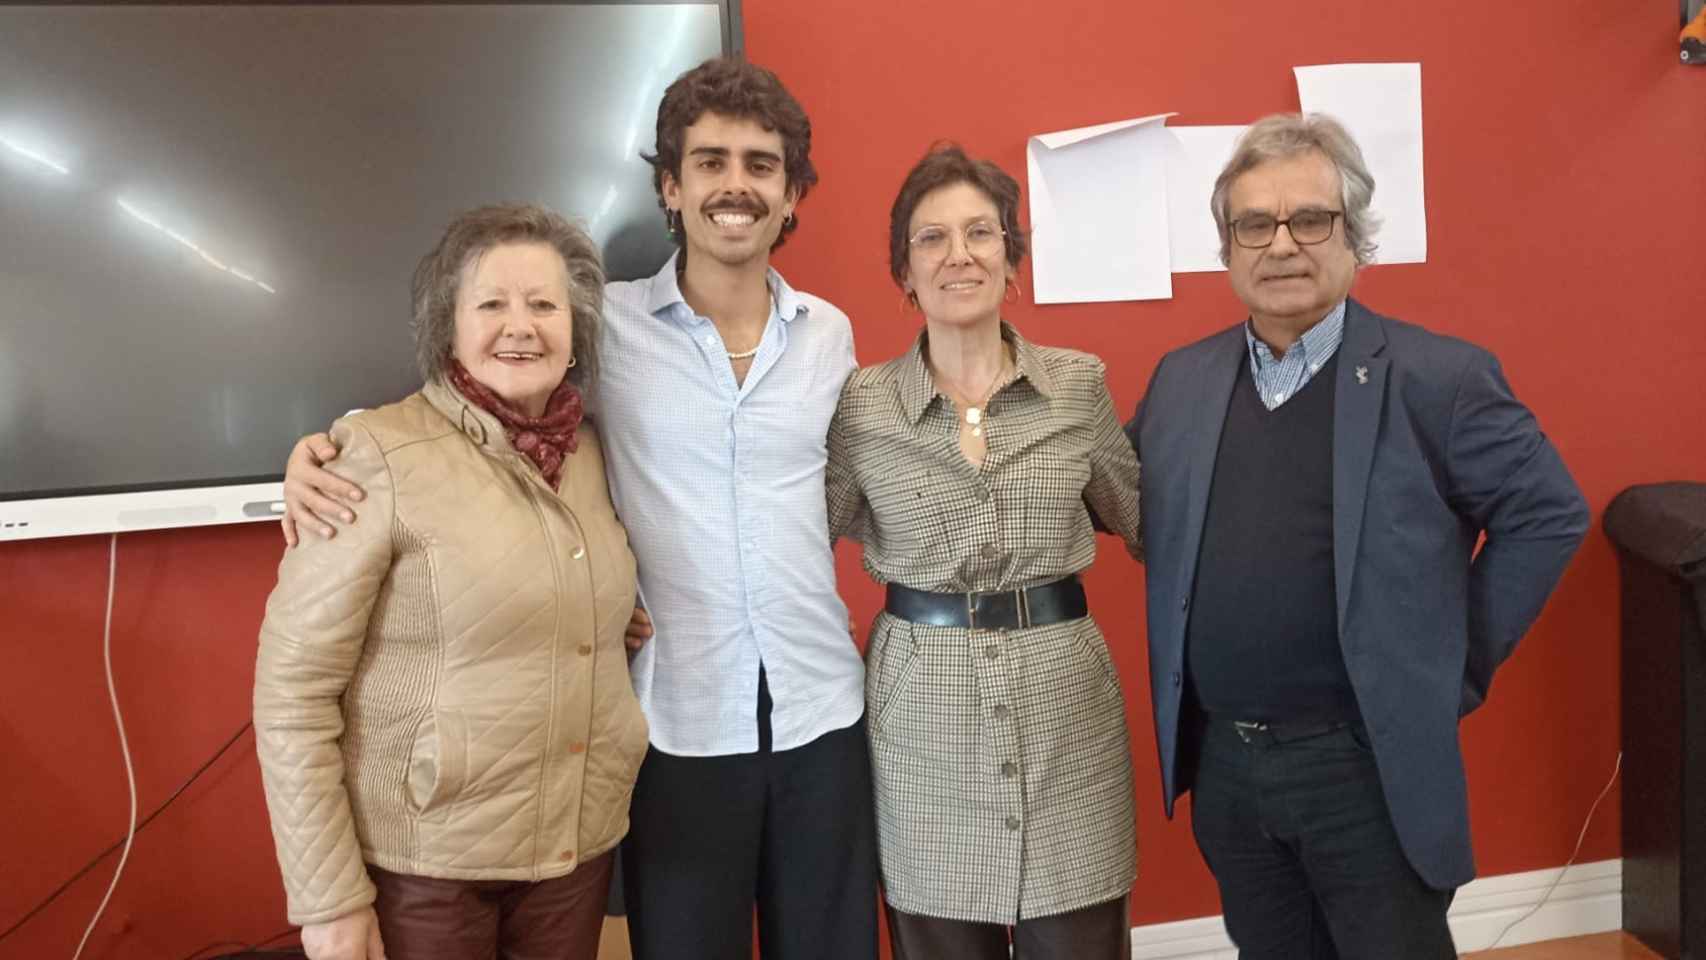 Diogo Araújo, junto a la presidenta de la Cámara de Miranda do Douro, Helena Barril, y el investigador Mario Correia